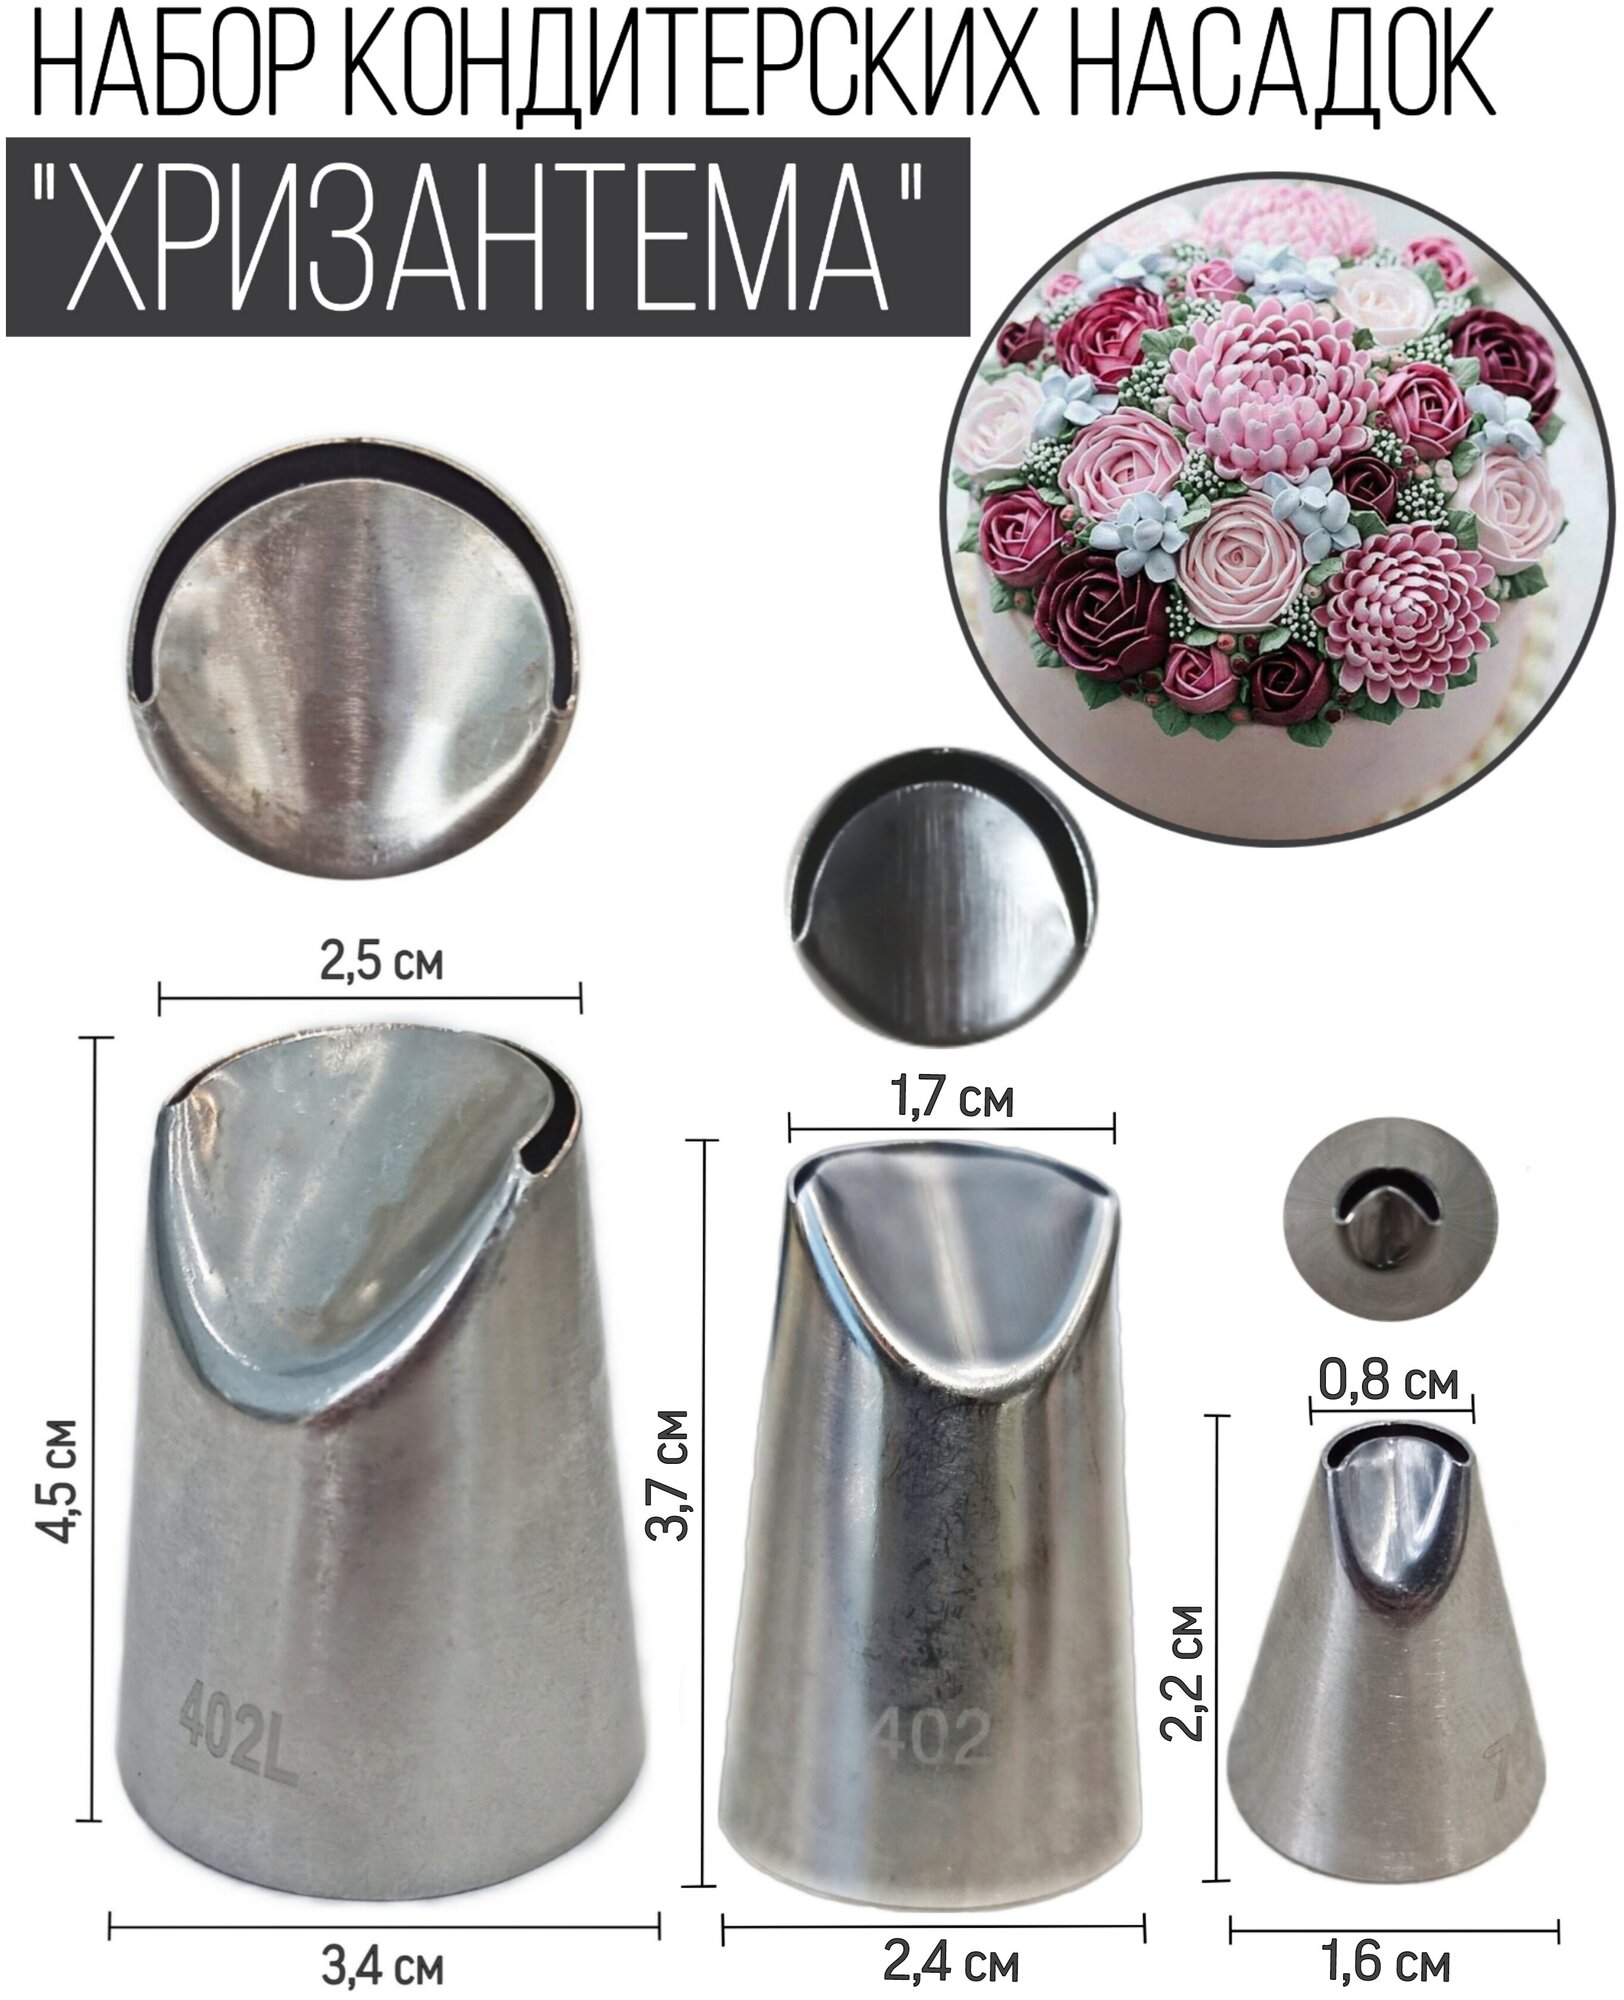 Набор кондитерских насадок для создания цветов из крема "Хризантема" (Кондитерская насадка 402L, 402, 79)